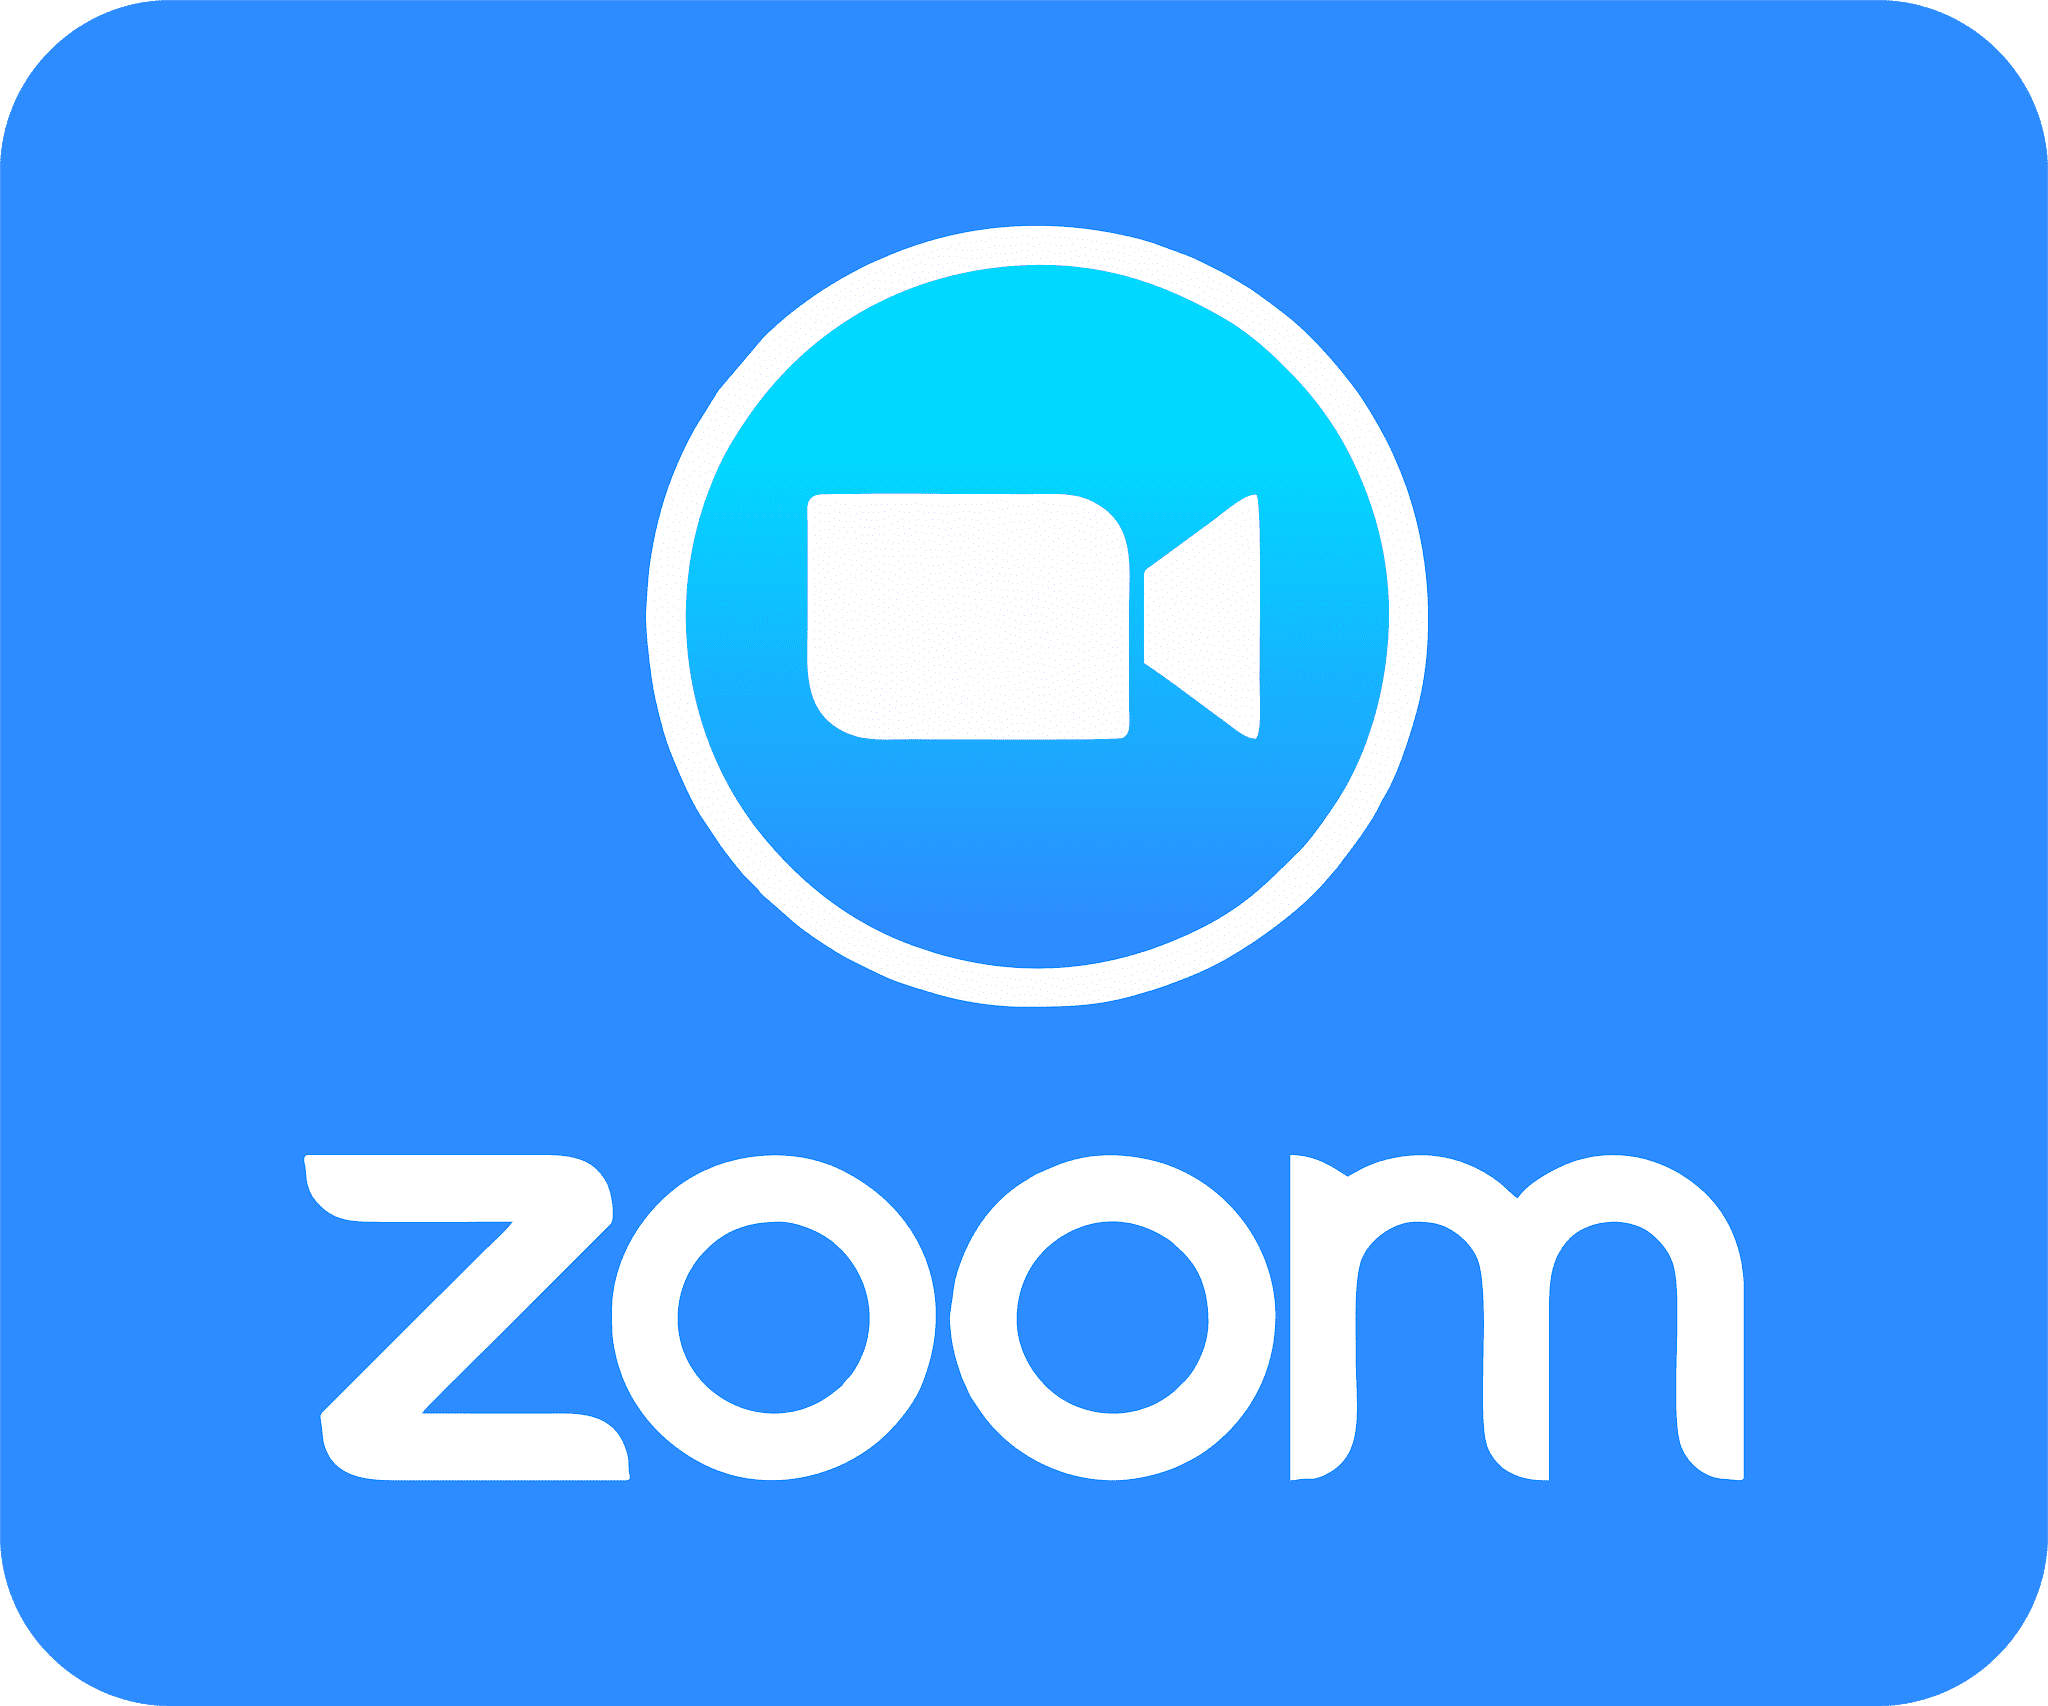 Zoom のロゴがある。